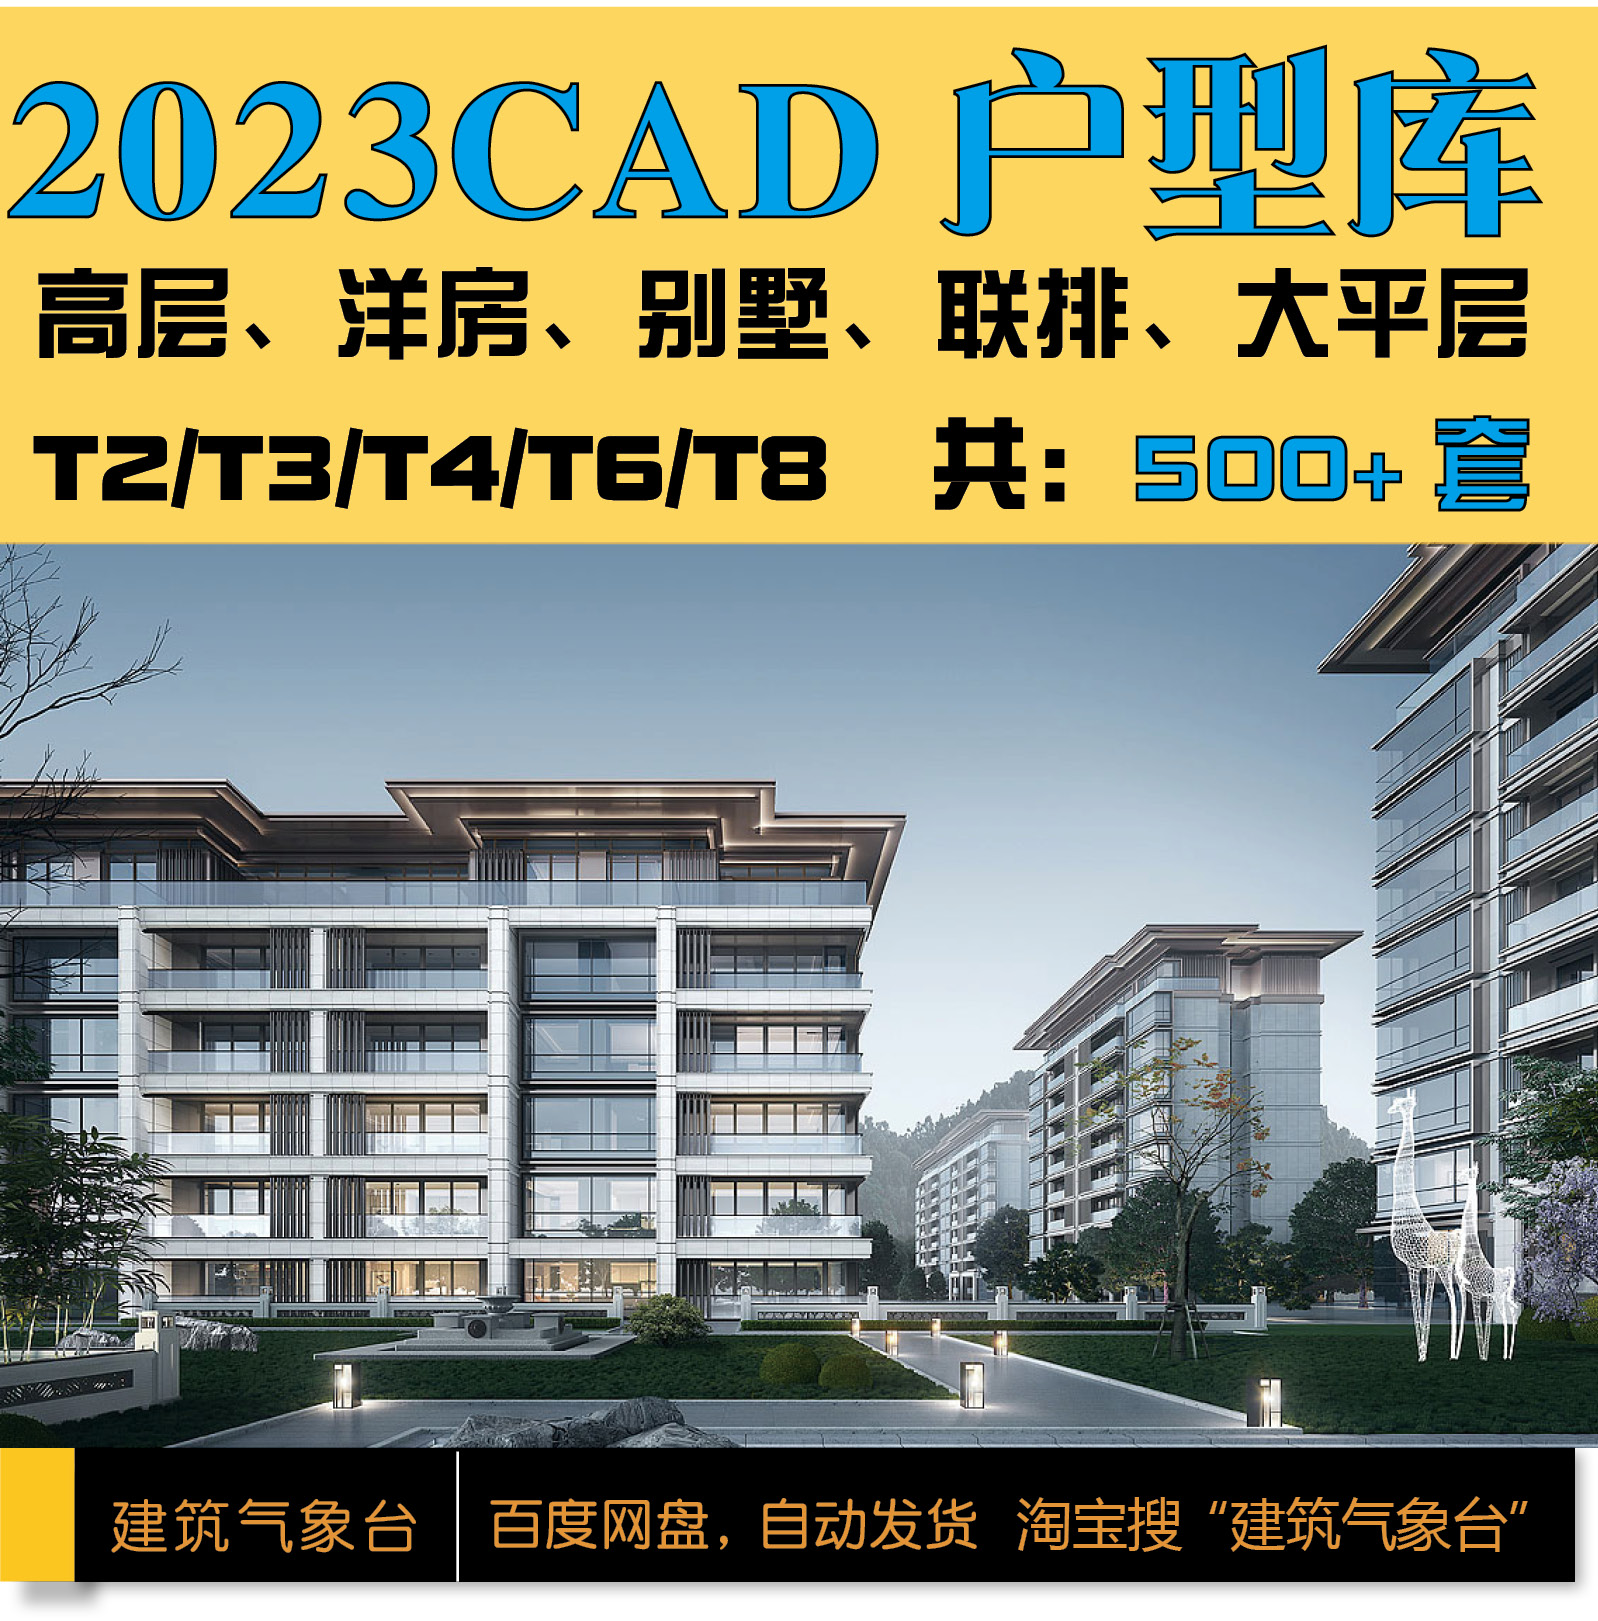 2023新dwg图CAD户型库住宅T2T4T6T8高层洋房叠拼核心筒标准化户型